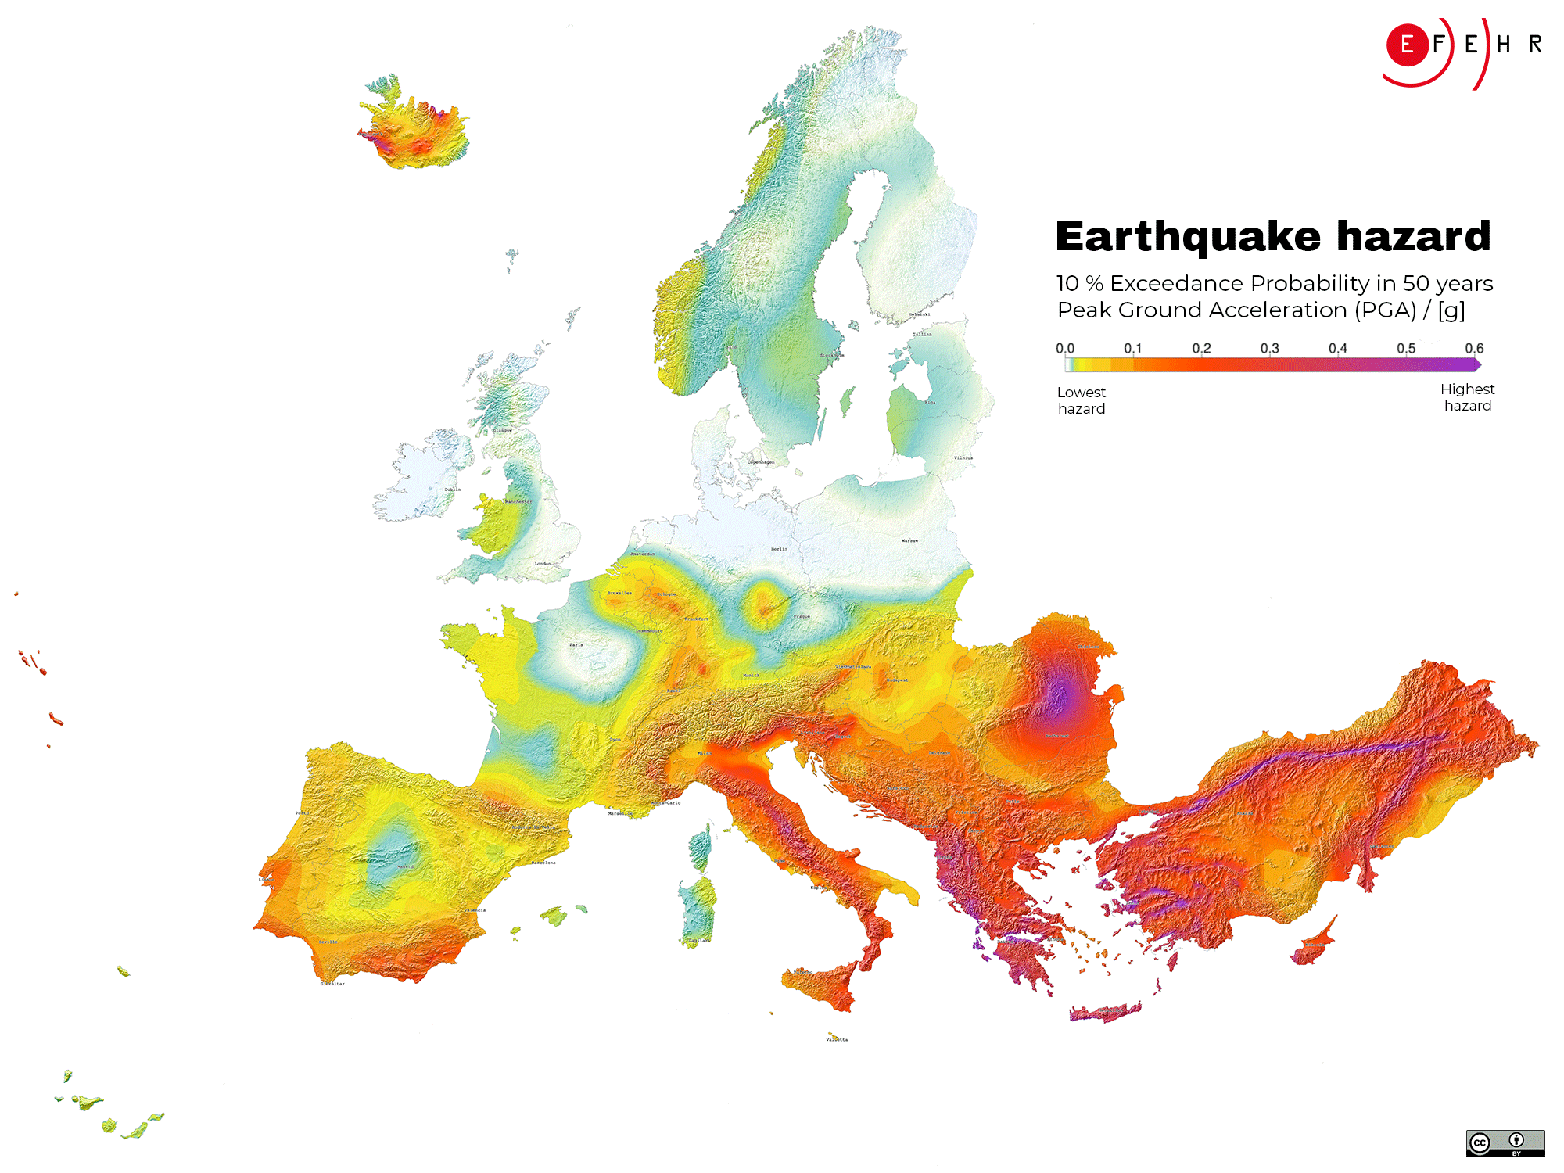 Karte von Europa mit unterschiedlich eingefärbten Gebieten